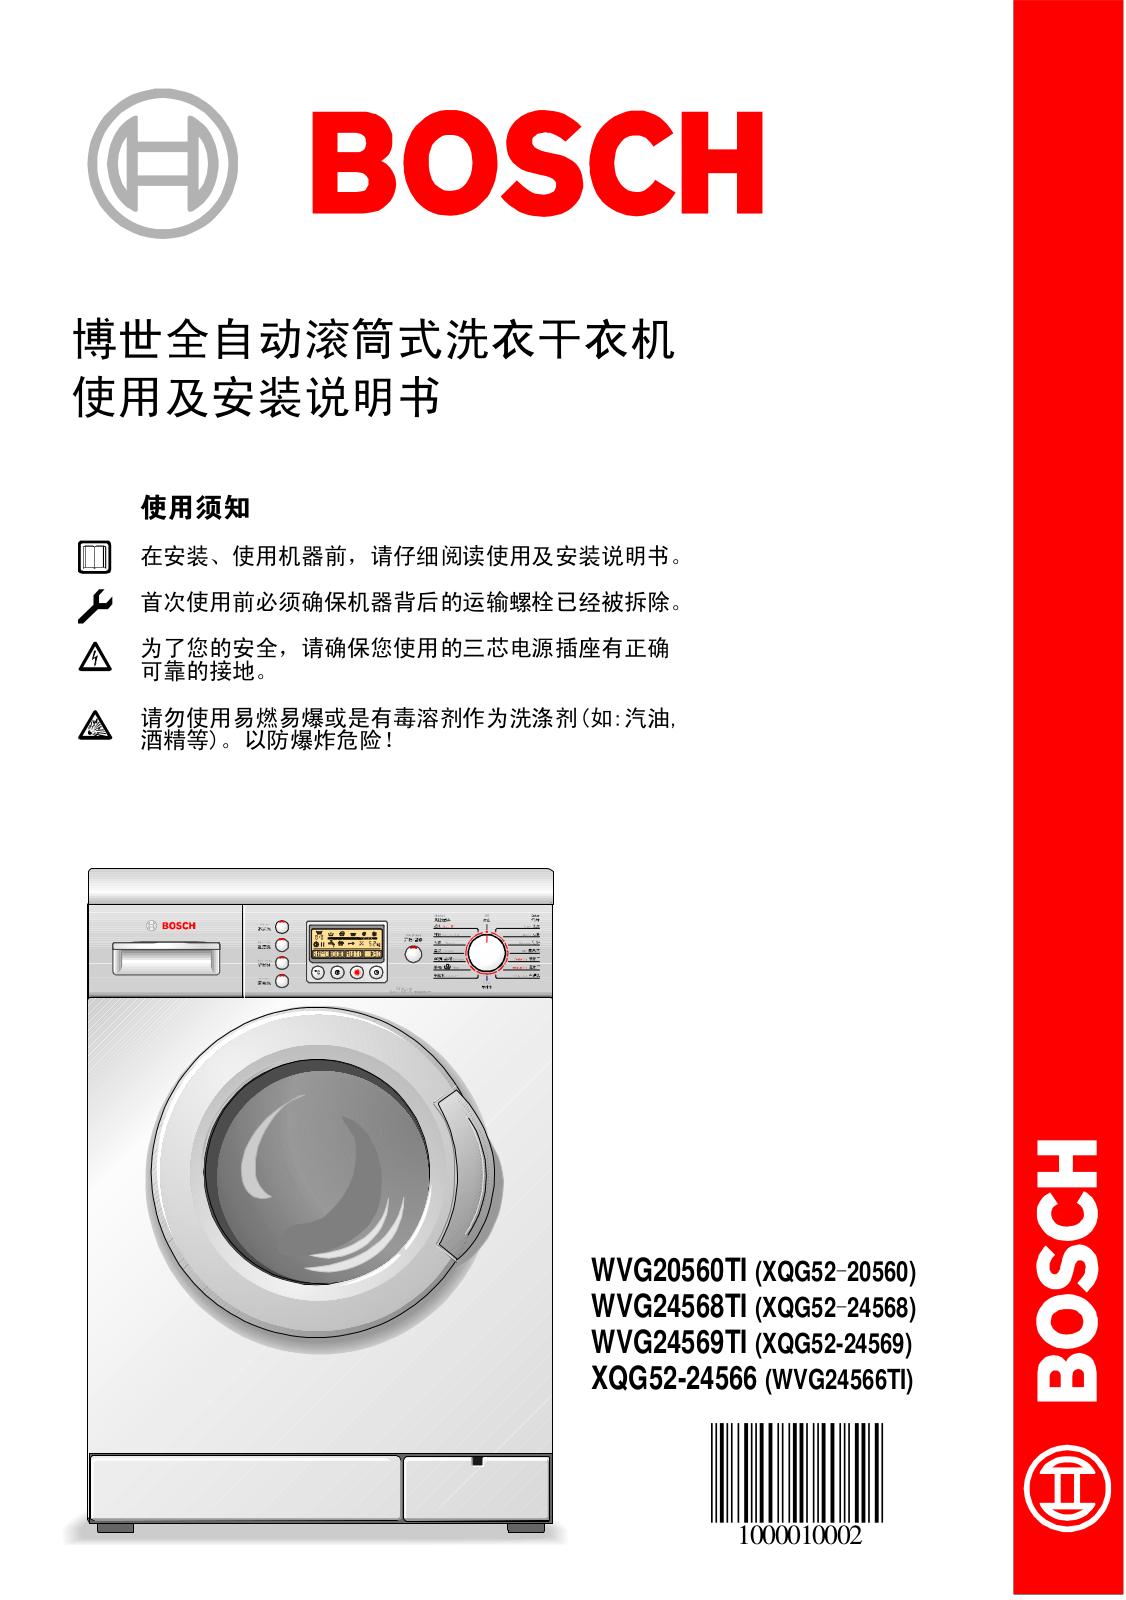 BOSCH XQG52-20560, XQG52-24568, XQG52-24569, WVG24566TI User Manual